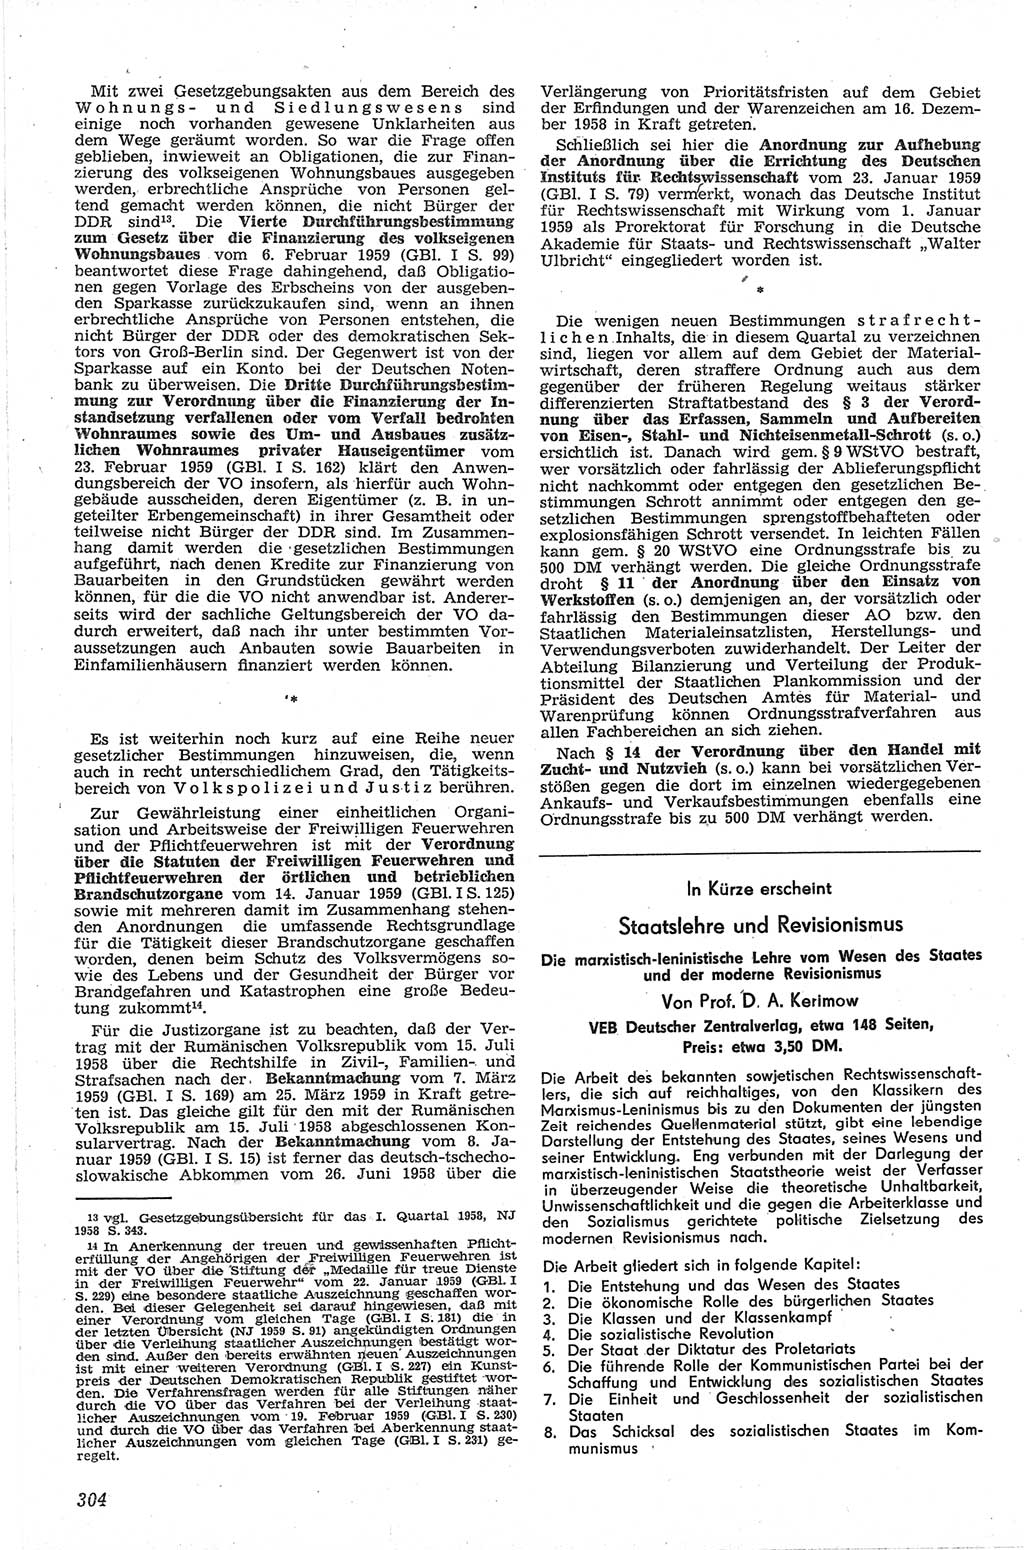 Neue Justiz (NJ), Zeitschrift für Recht und Rechtswissenschaft [Deutsche Demokratische Republik (DDR)], 13. Jahrgang 1959, Seite 304 (NJ DDR 1959, S. 304)